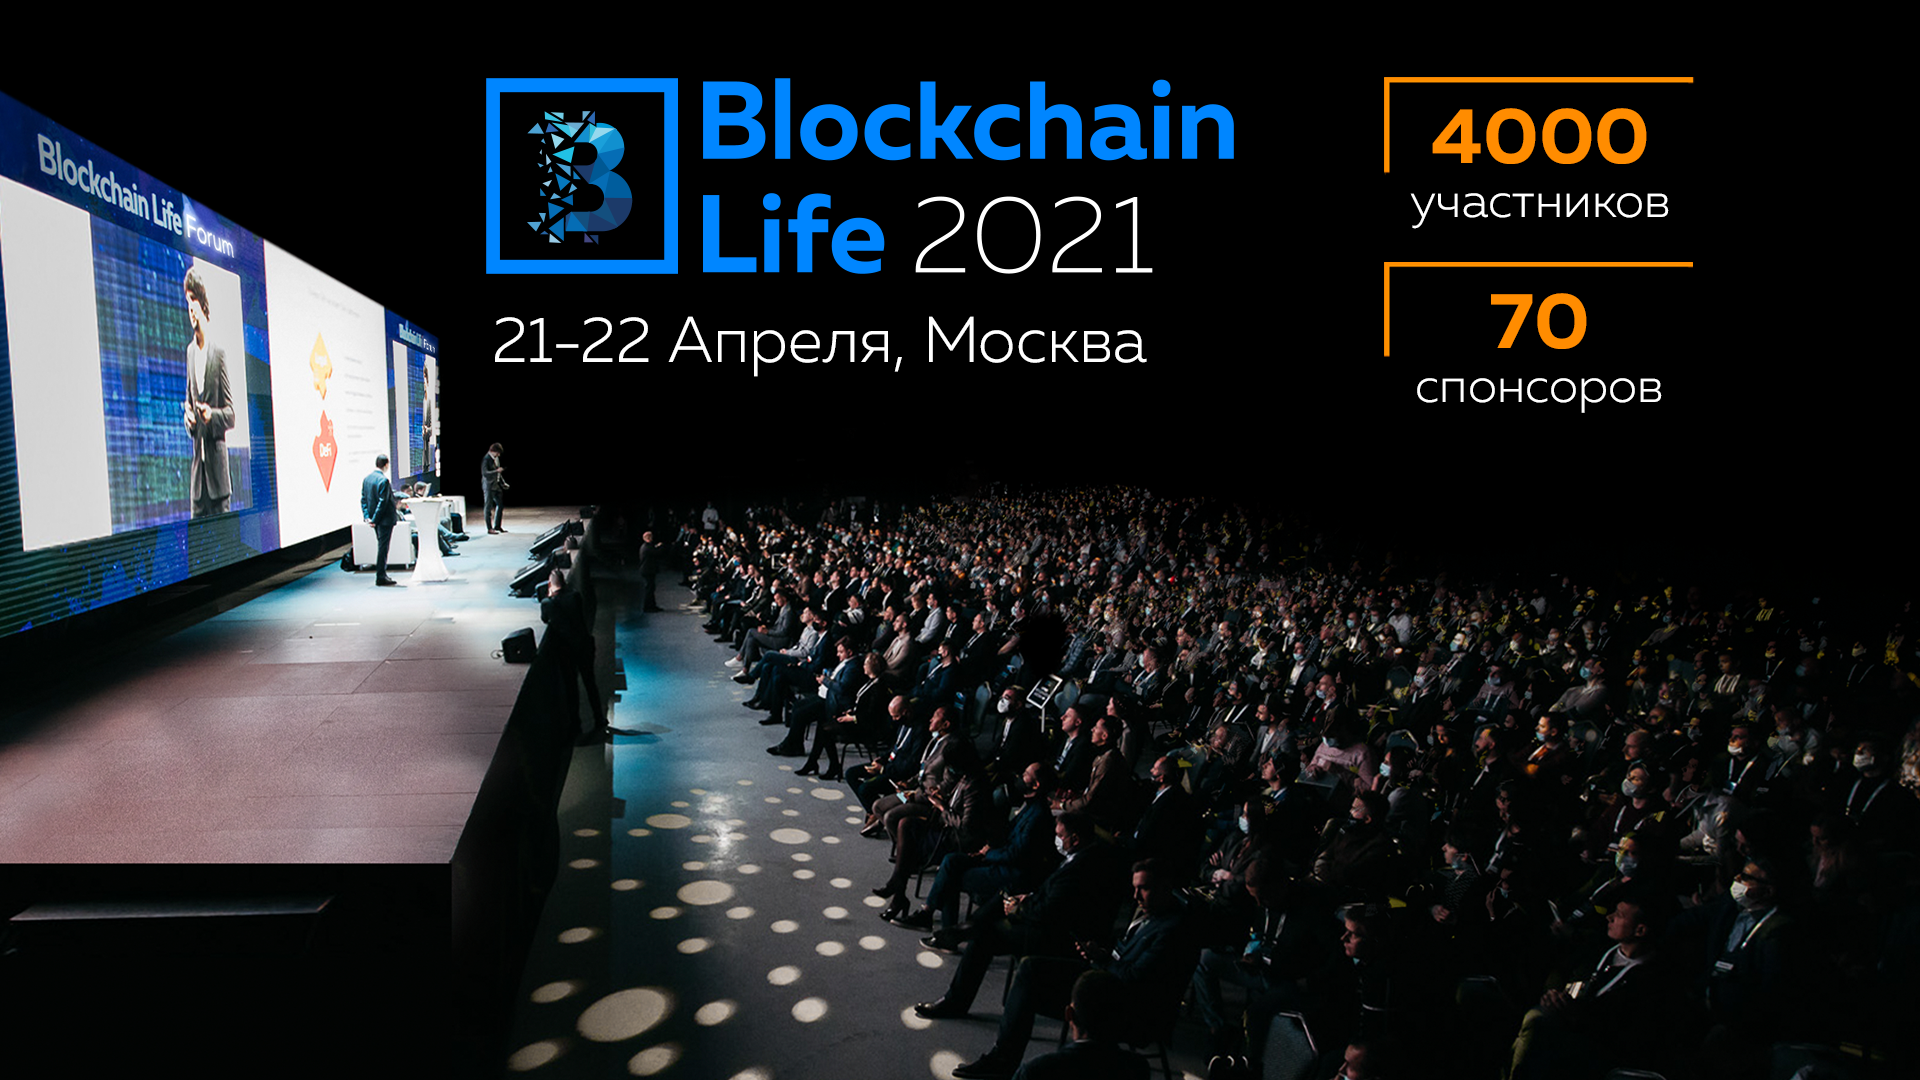 Форум Blockchain Life 2021 - Что на нем будет?